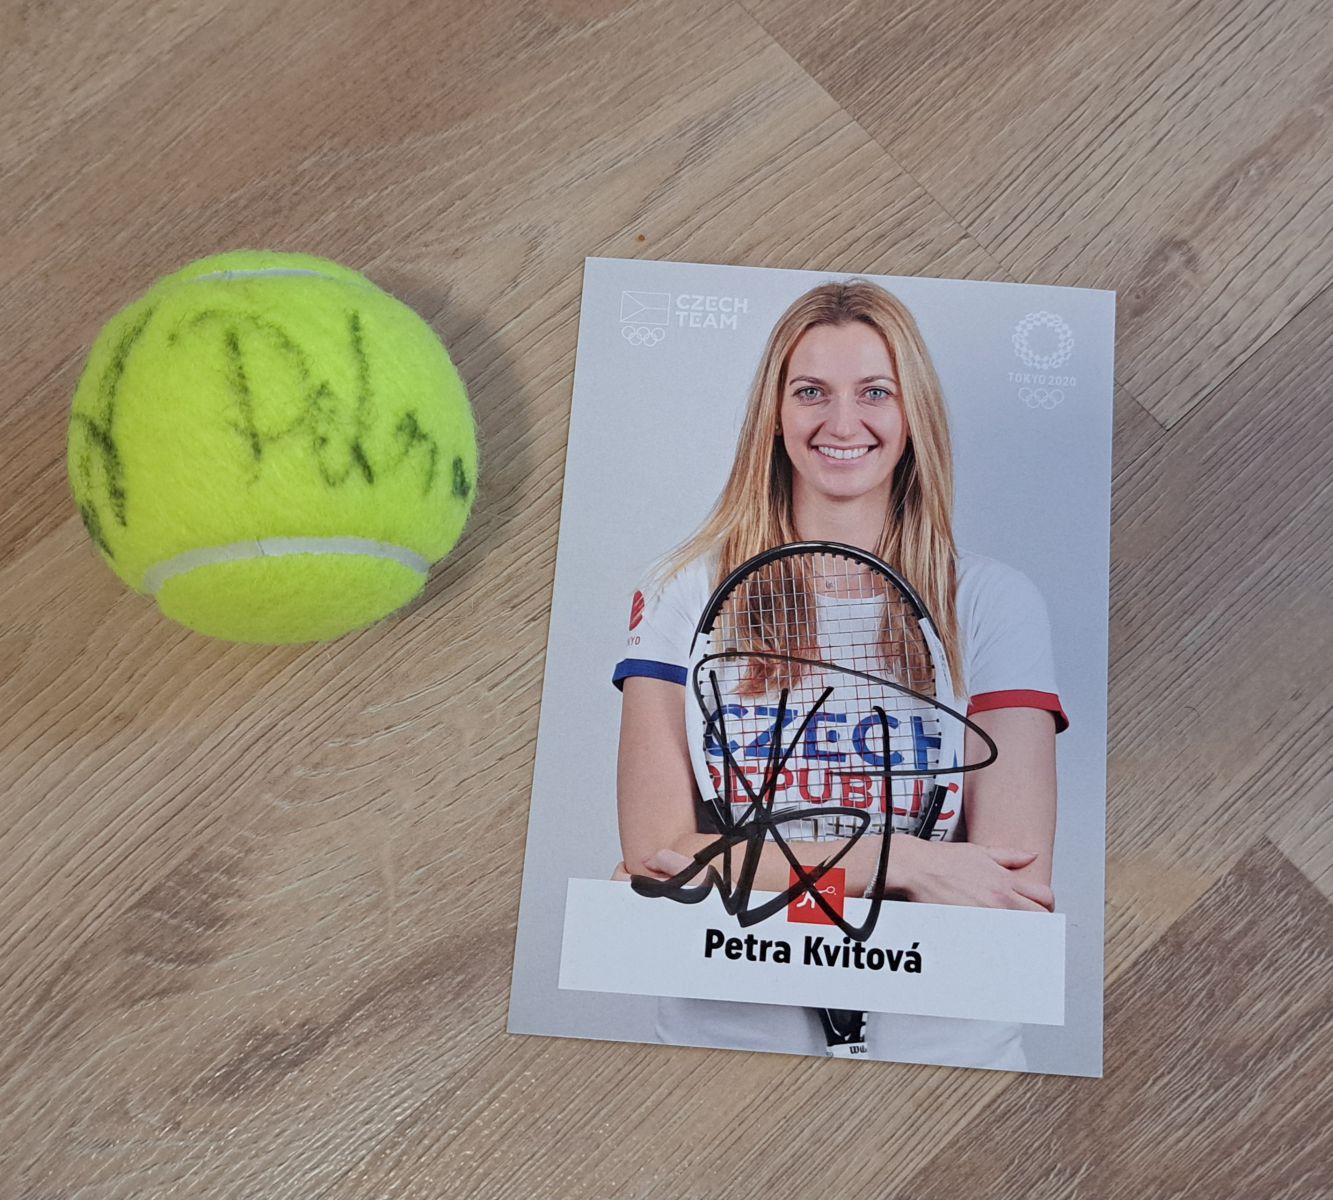 Petra Kvitová - podepsaný míč a karta fotka